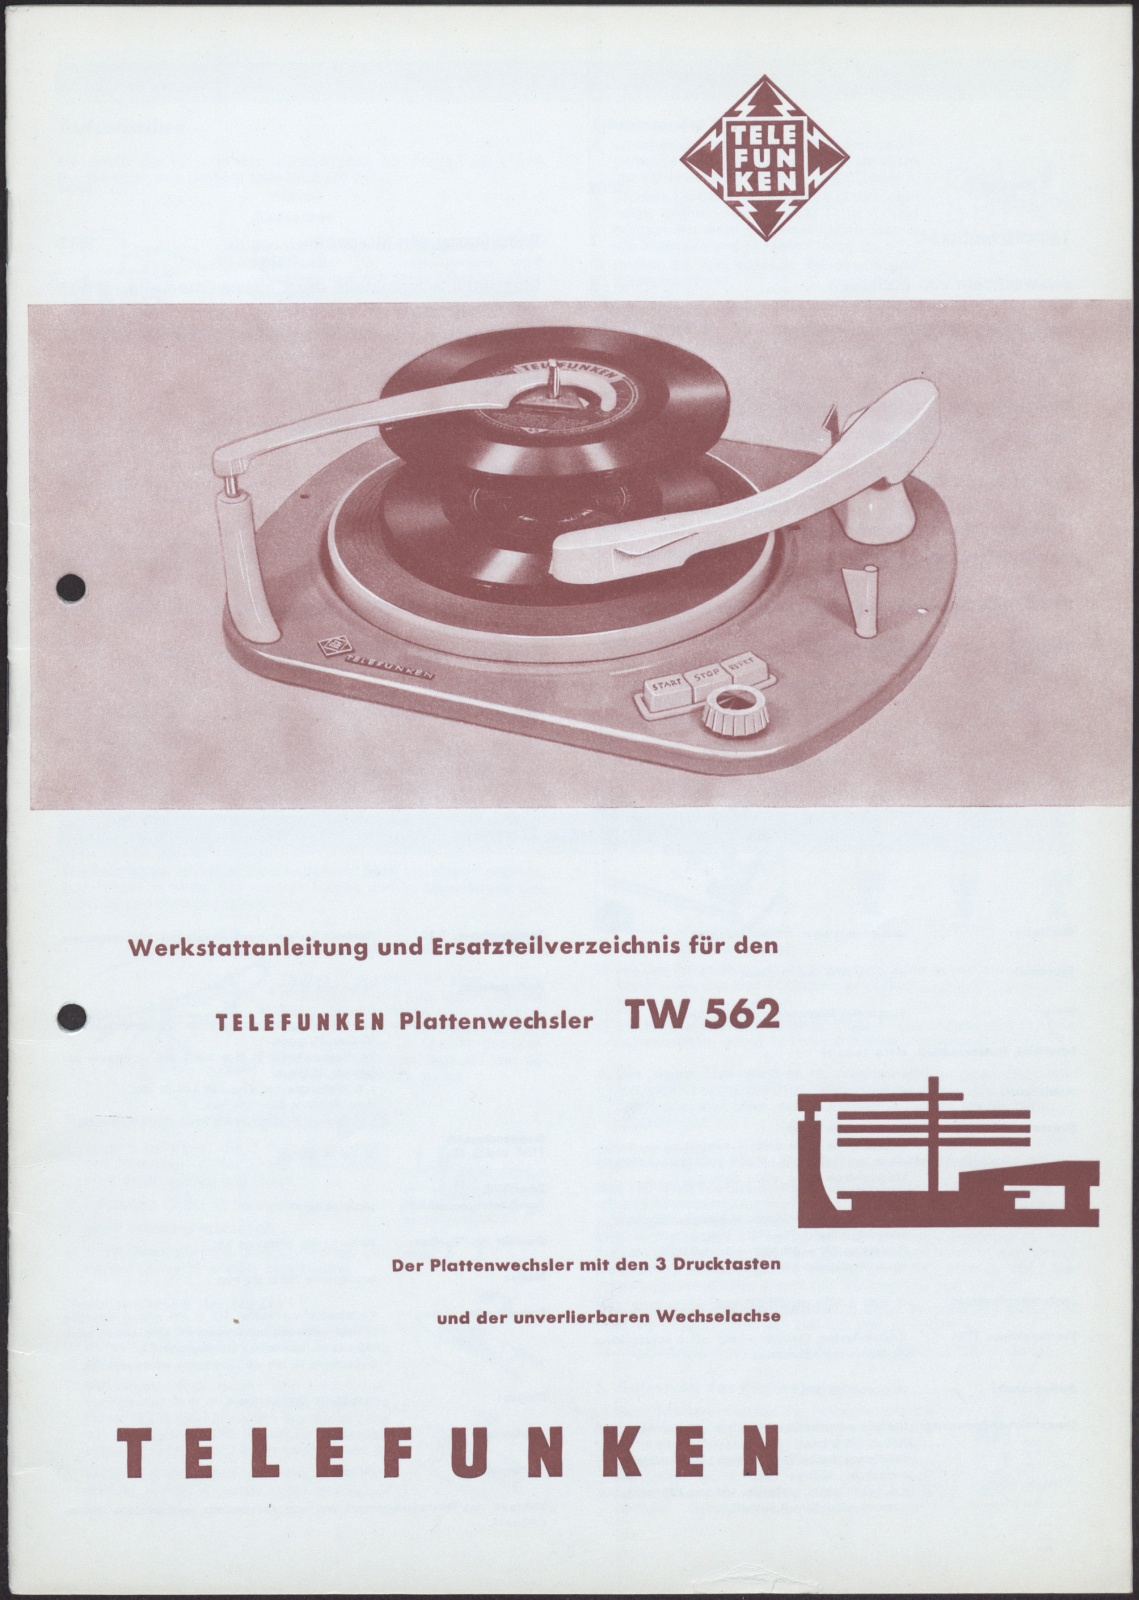 Bedienungsanleitung: Werkstattanleitung und Ersatzteilverzeichnis für den Telefunken Plattenwechsler TW 562 (Stiftung Deutsches Technikmuseum Berlin CC0)